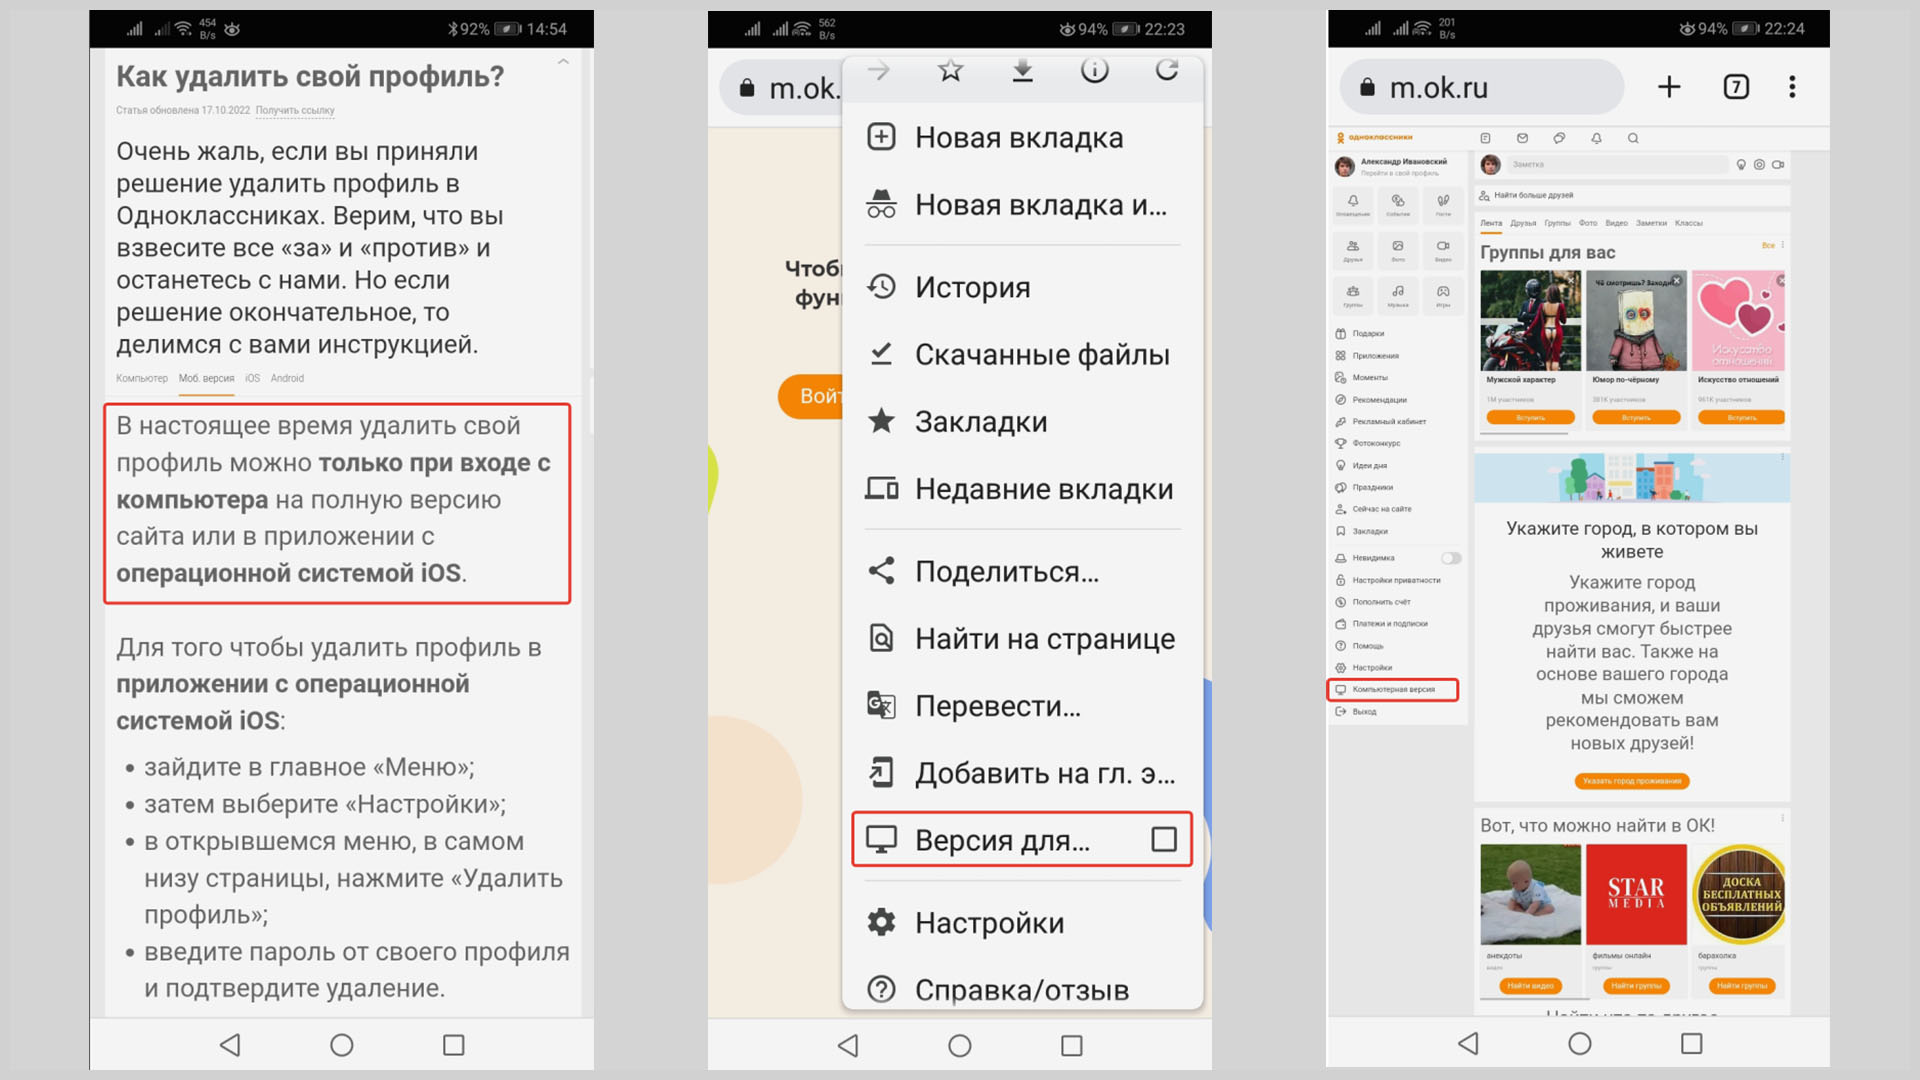 Скриншоты экрана смартфона, перевод браузера в полную версию.